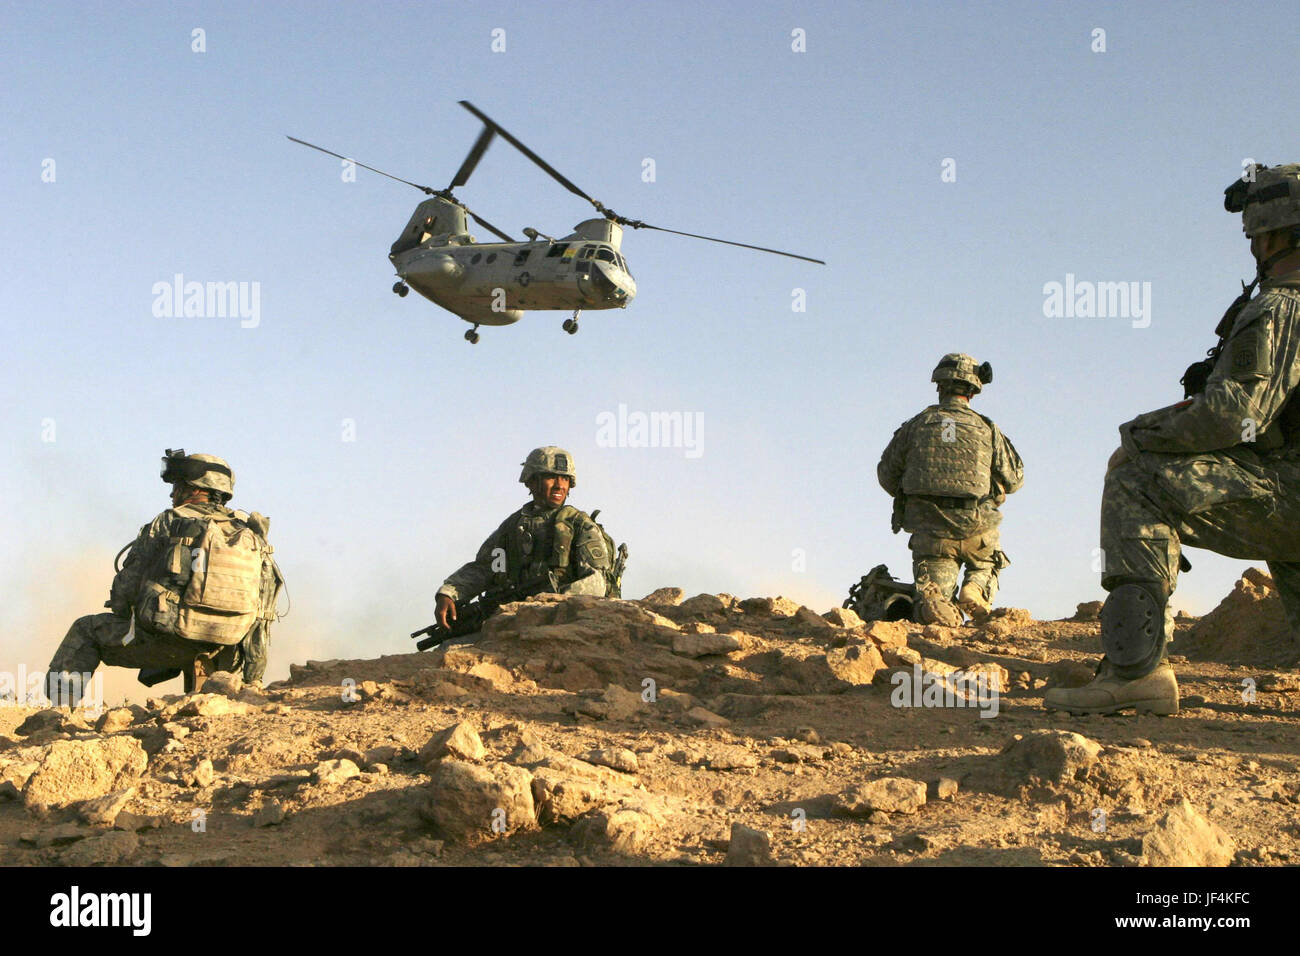 050921-M-8530M-011 U.S. I soldati dell esercito istituito un perimetro di sicurezza dopo lo sbarco nel deserto all'inizio dell'operazione di Baghdaddi, Iraq, sul Sett. 21, 2005. I soldati stanno conducendo operazioni counterinsurgency con le forze di sicurezza irachene per creare un ambiente sicuro. I soldati sono assegnati a Charlie Company, 3° Battaglione, 504th Parachute Reggimento di Fanteria. DoD foto di Lance Cpl. Michael R. McMaugh, U.S. Marine Corps. (Rilasciato) Foto Stock